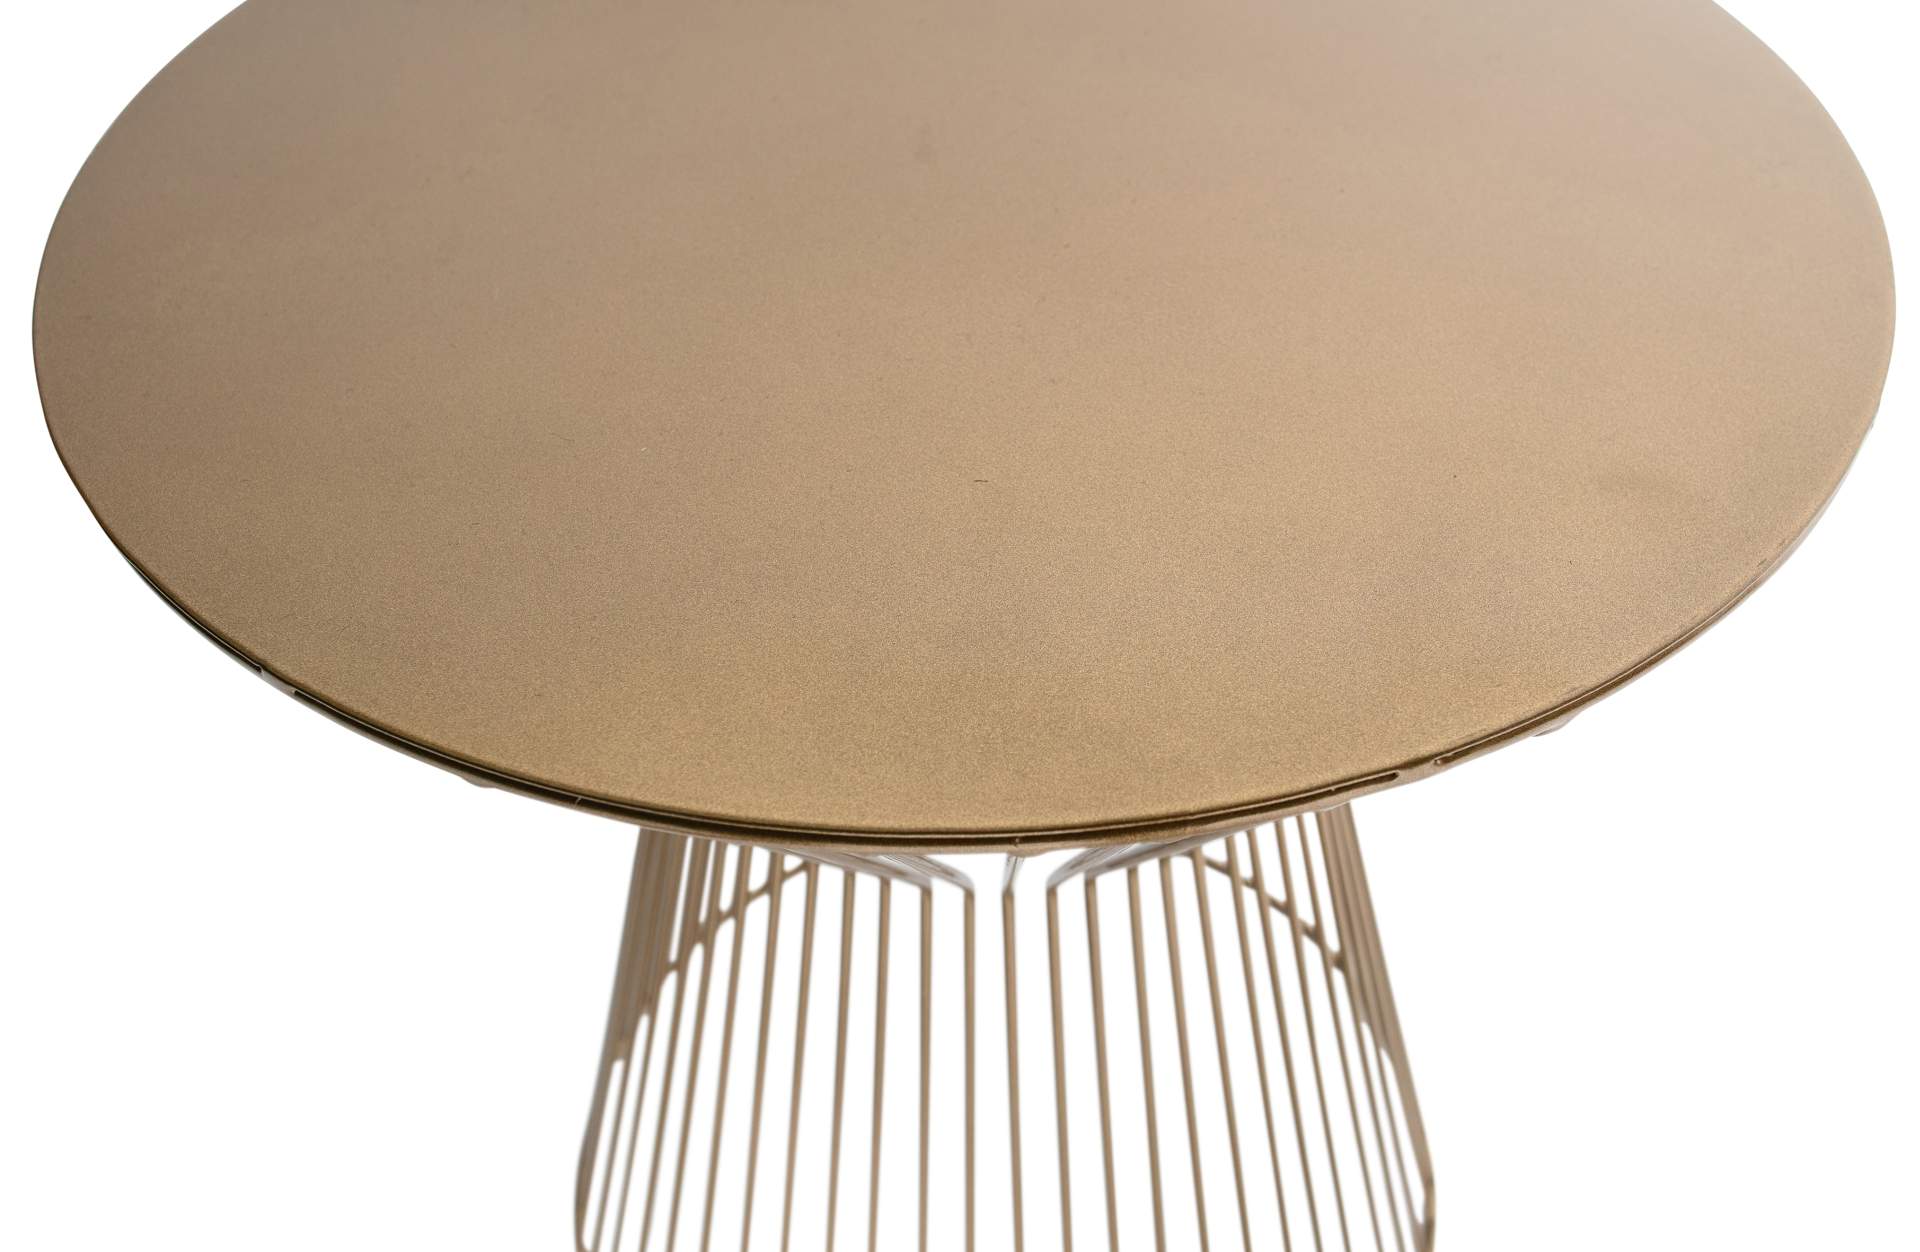 Der Beistelltisch Suus wurde aus Metall gefertigt, welches einen goldenen Farbton besitzt. Der Tisch überzeugt mit seinem modernen Design.